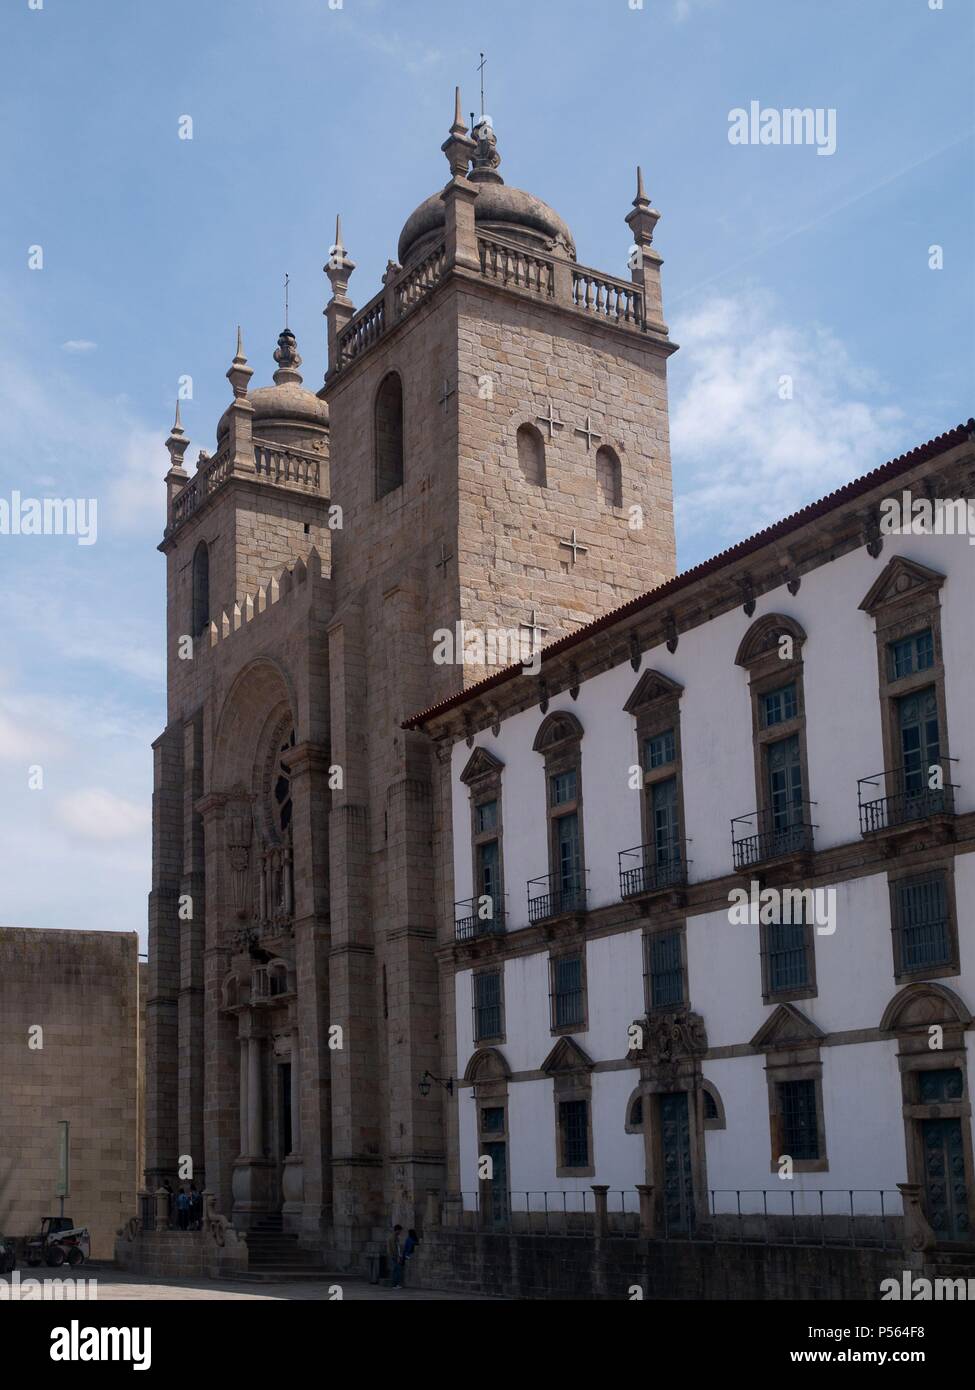 Il Portogallo. OPORTO (porto). Vista de la Catedral, construida en el Siglo XII siguiendo las huellas del estilo romanico, muestra influencias de la región Francesa de Lemosín y de la Escuela de Coimbra. Foto Stock